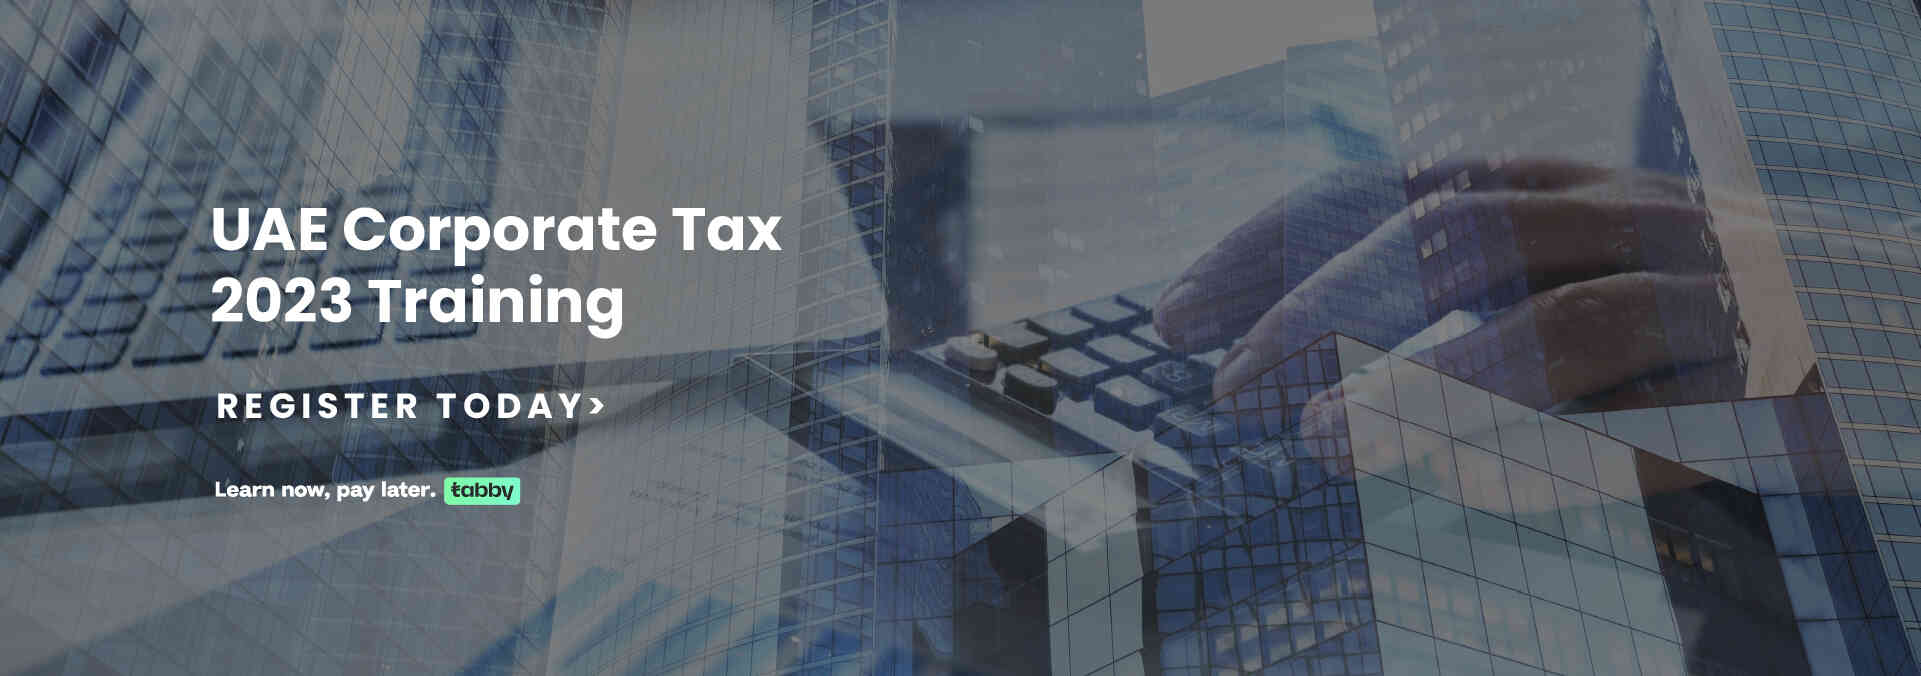 Corporate Tax Training in UAE 2023